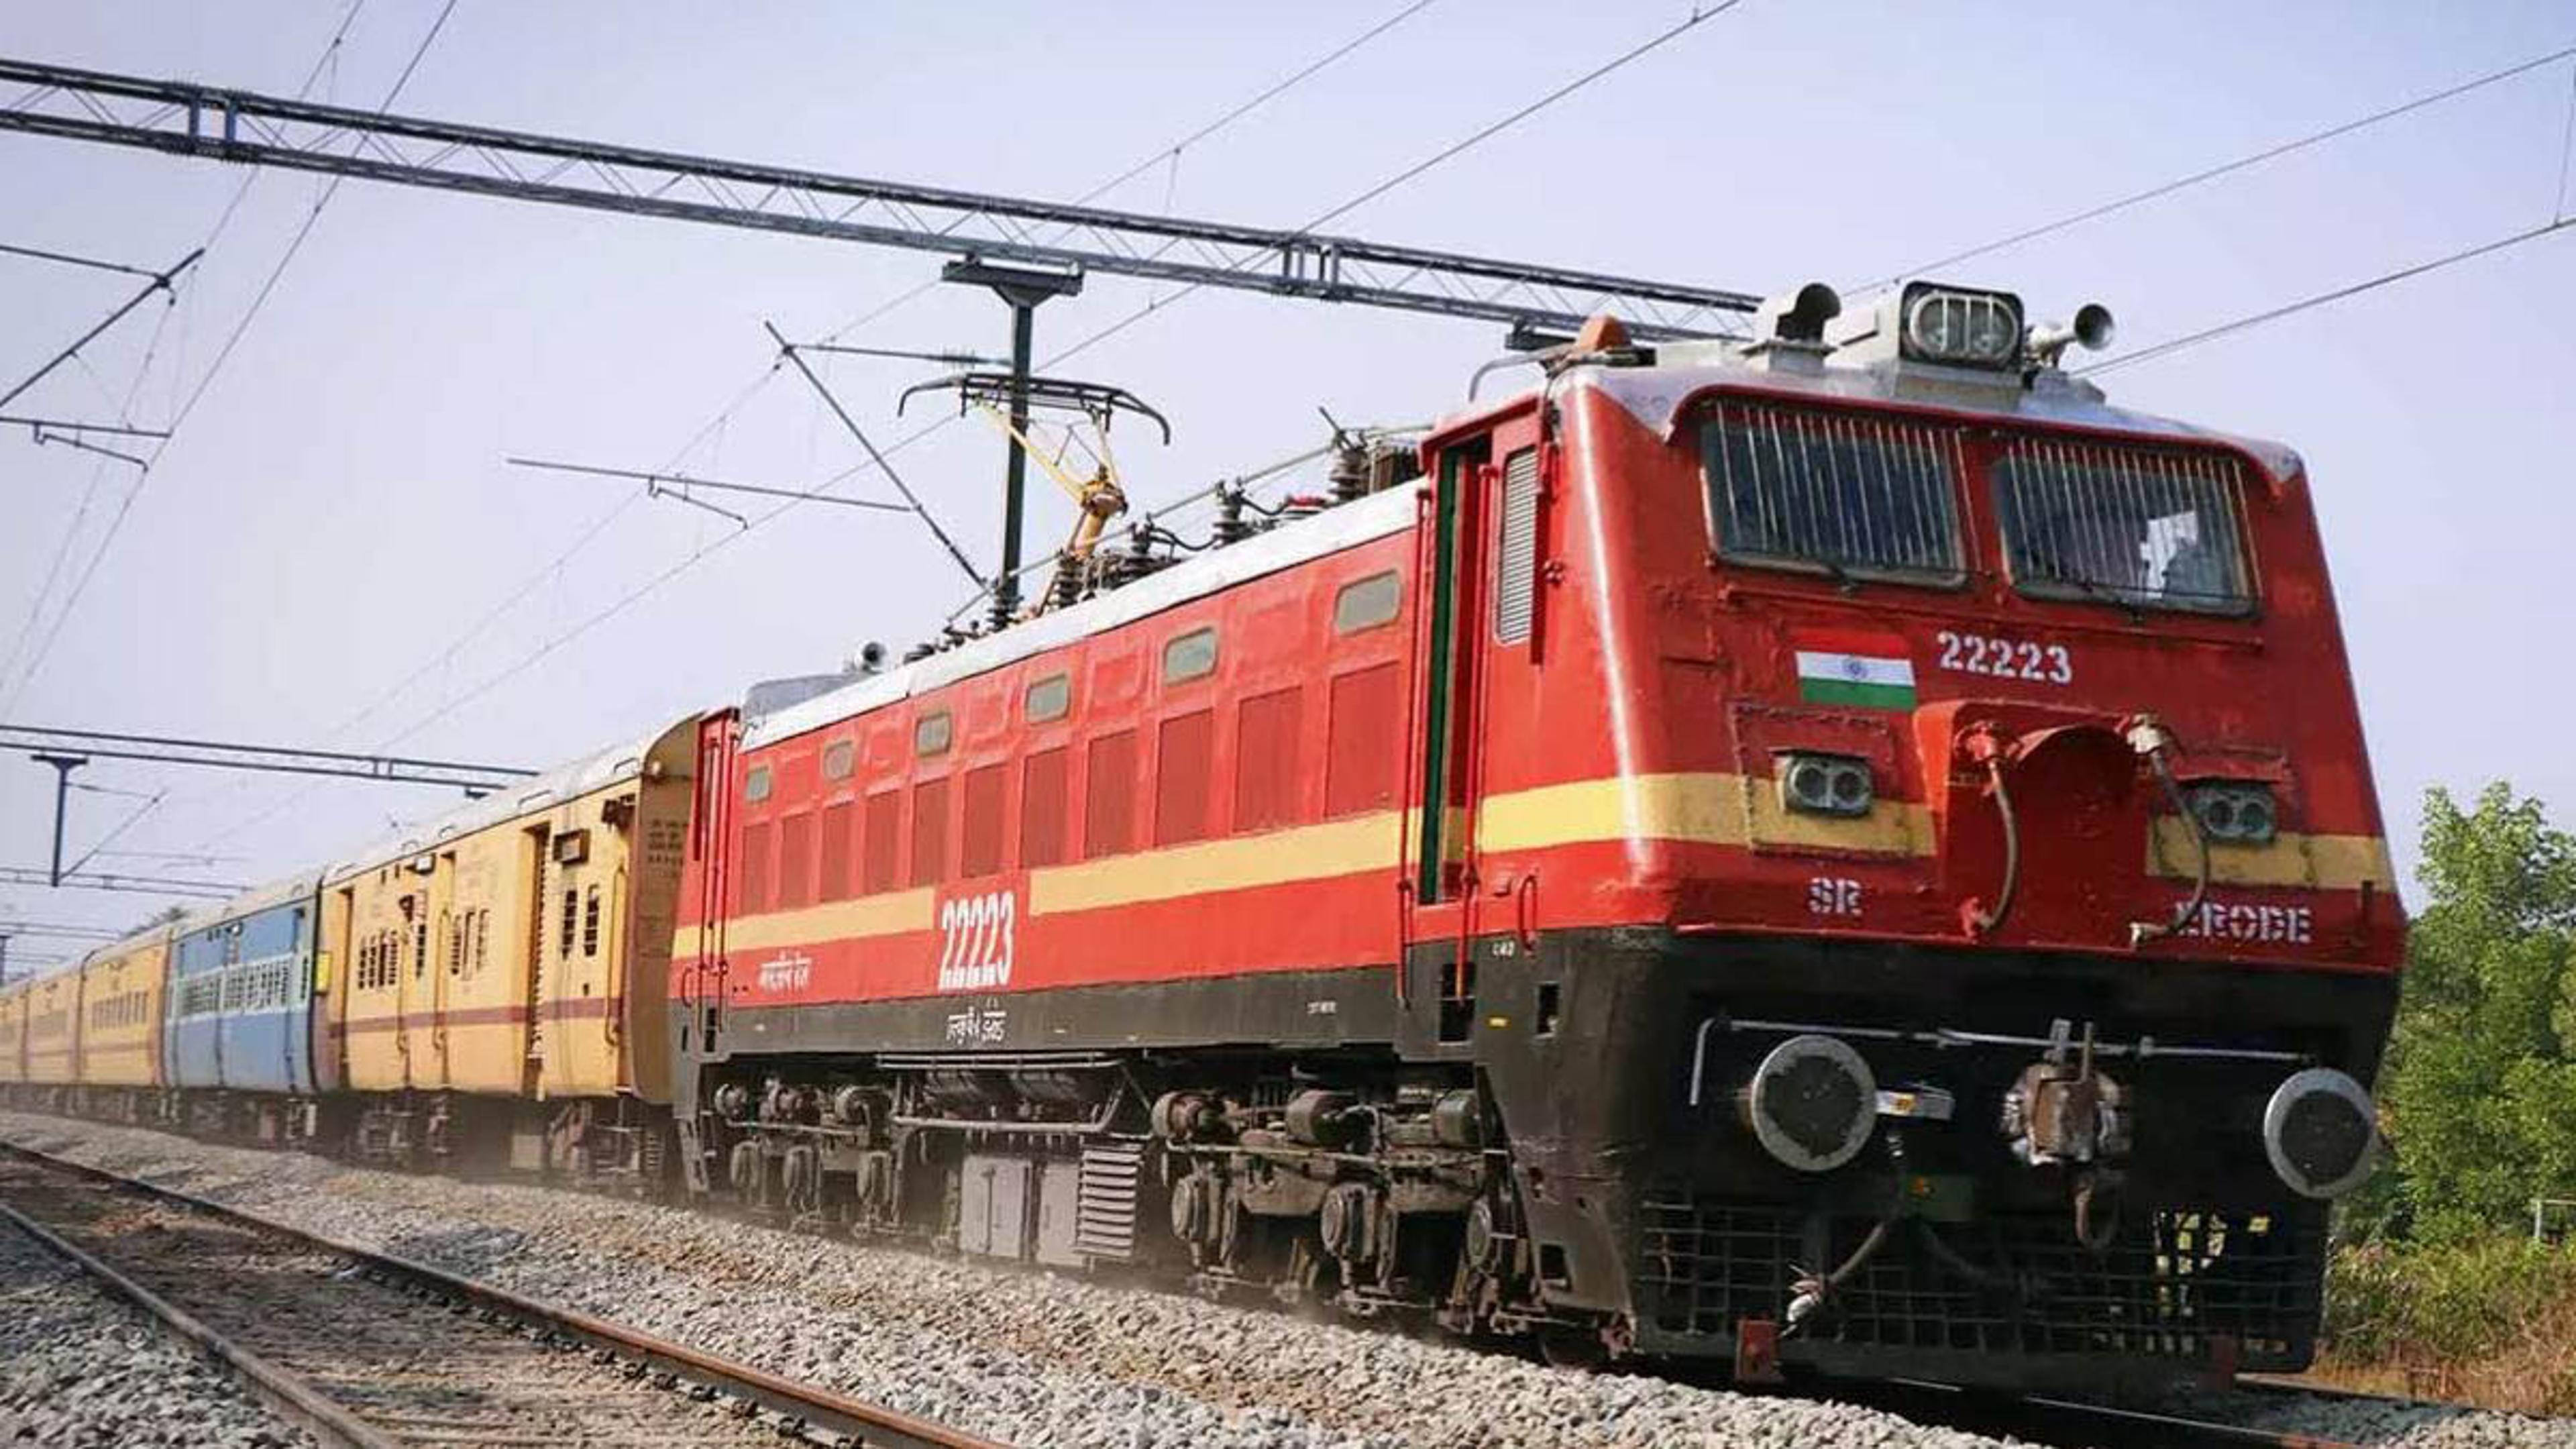 शर्मनाक: प्रयागराज में रेल अधिकारियों की लापरवाही से 10 घंटे तक ट्रैक पर पड़ा
रहा शव